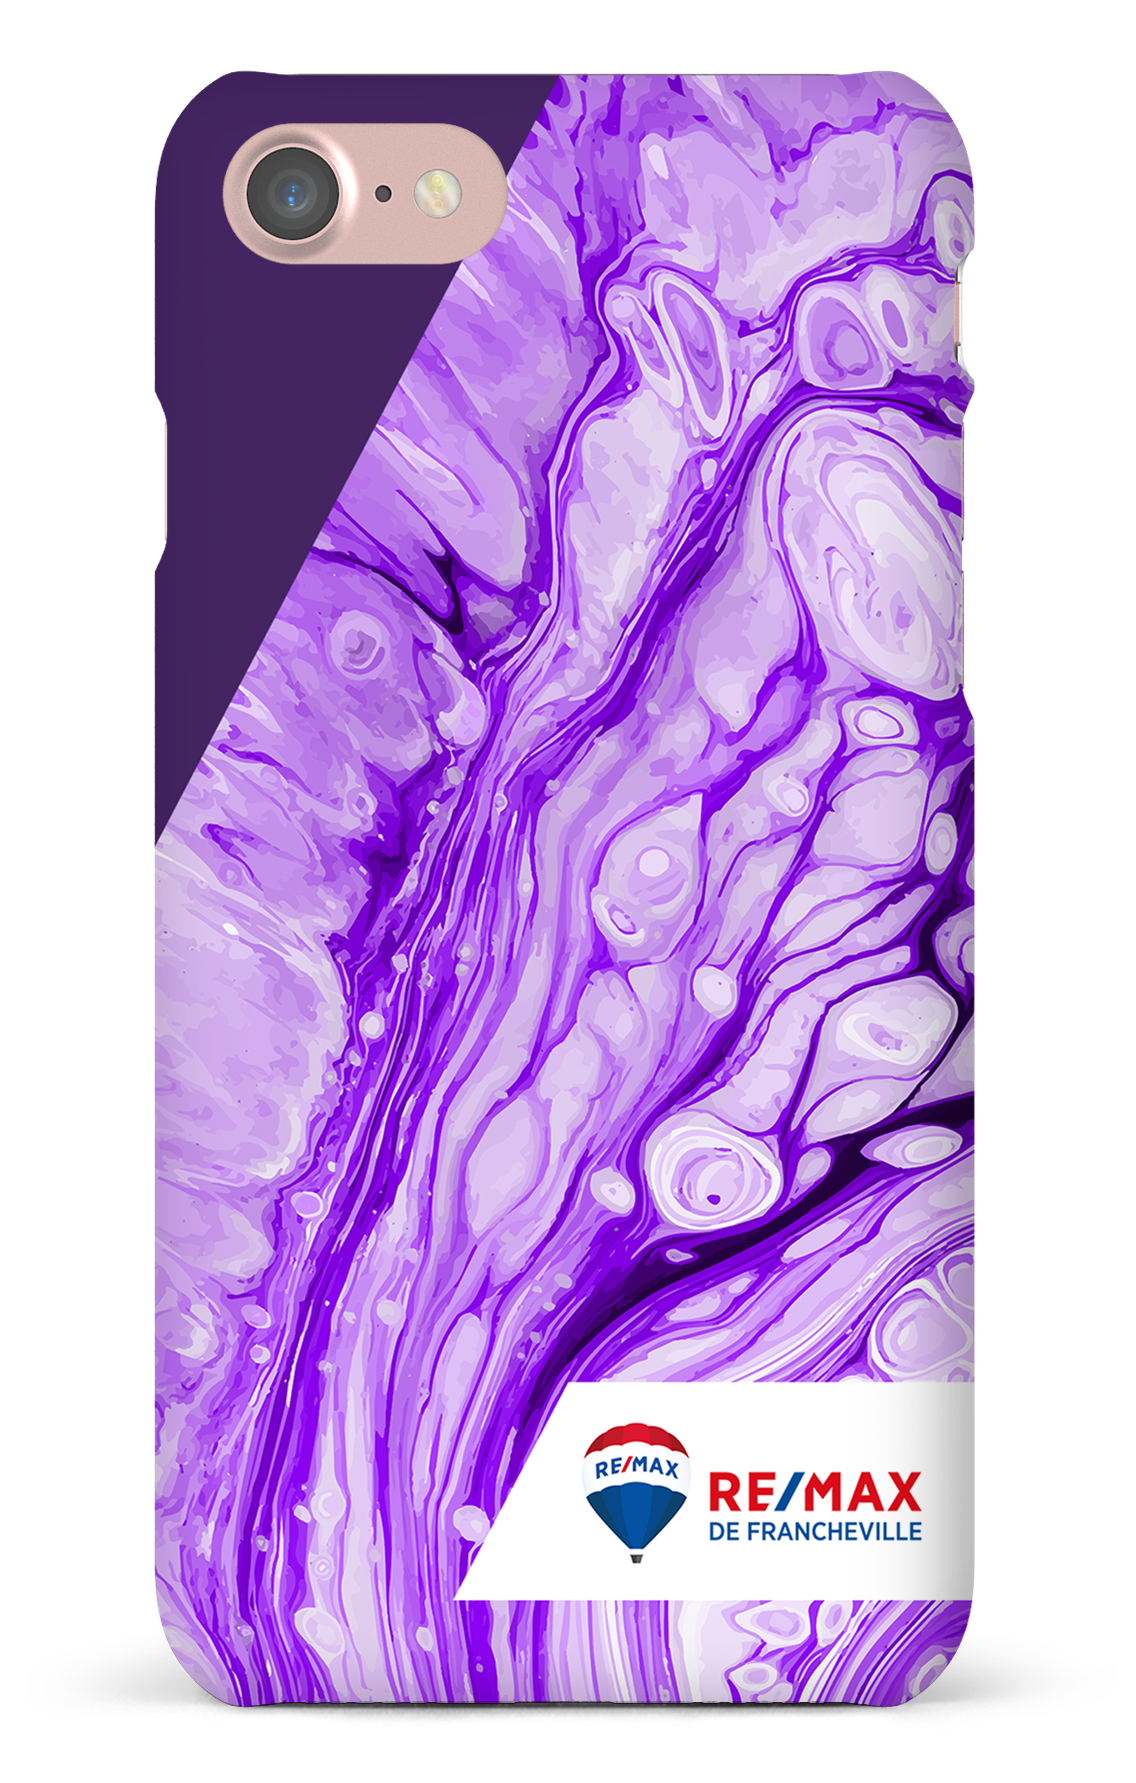 Peinture marbrée claire violette de Francheville - iPhone 7